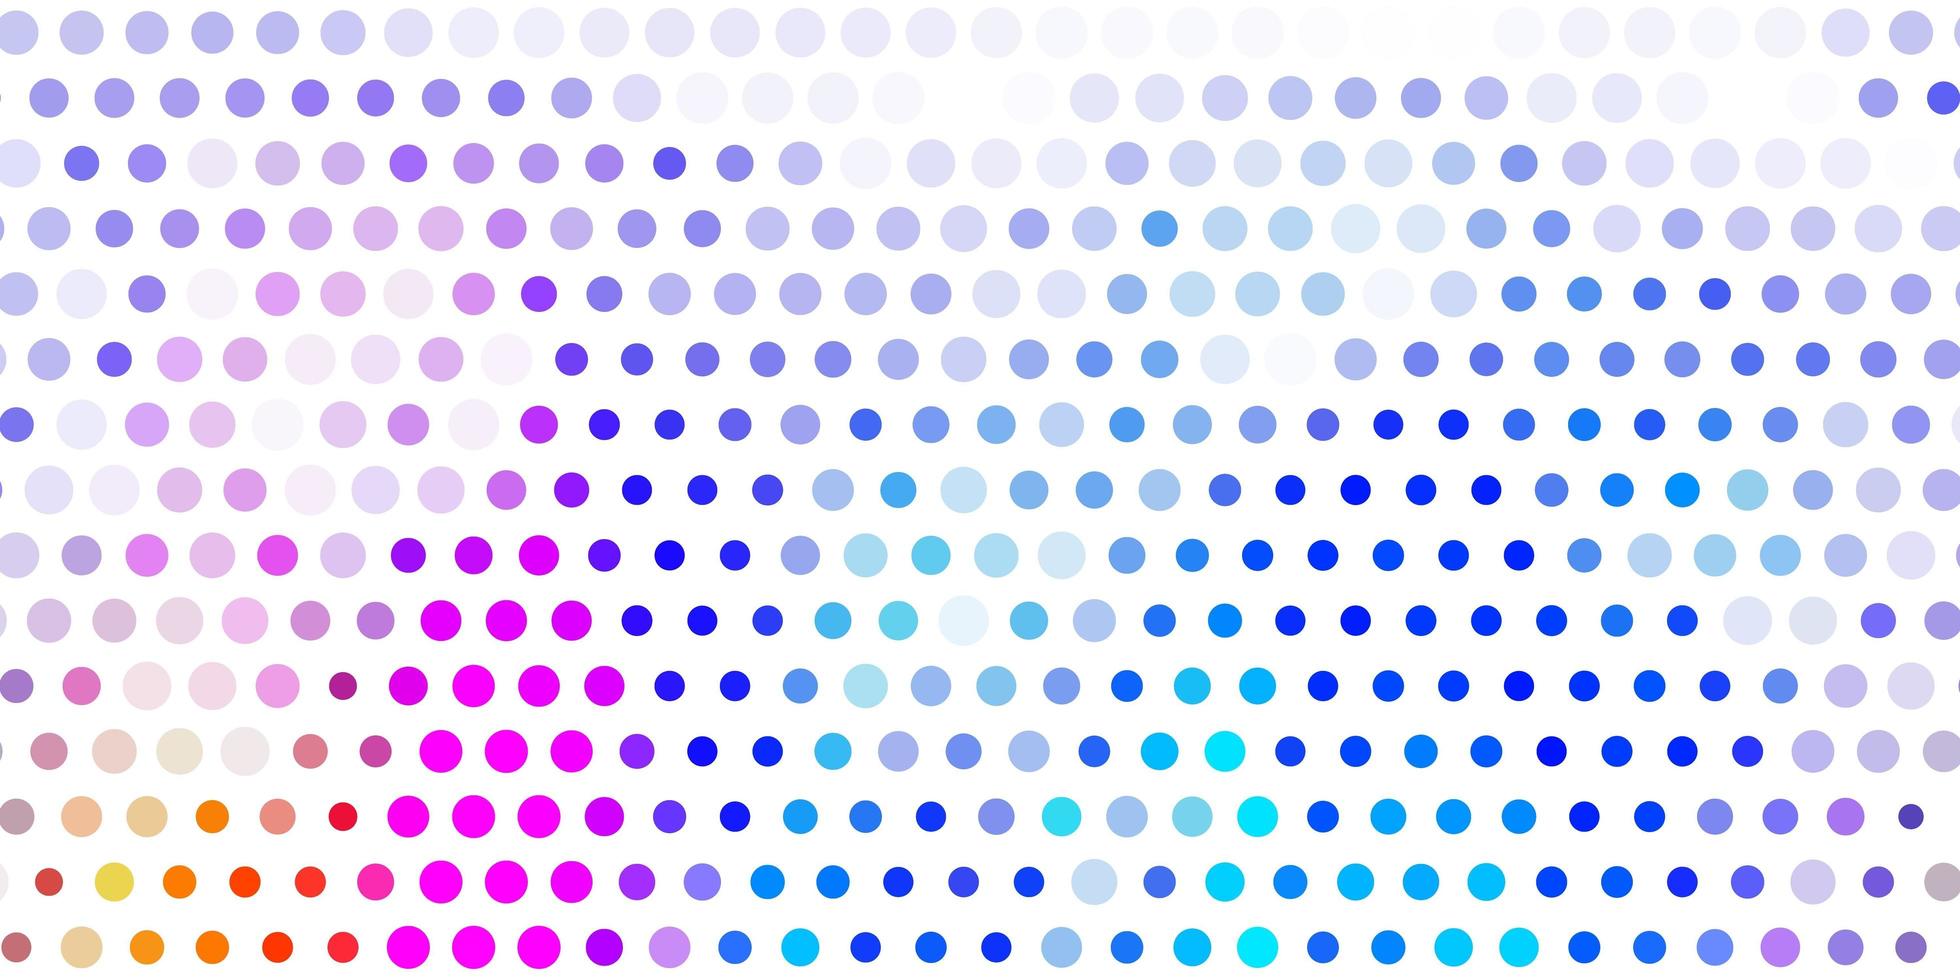 ljus flerfärgad vektorbakgrund med bubblor. vektor